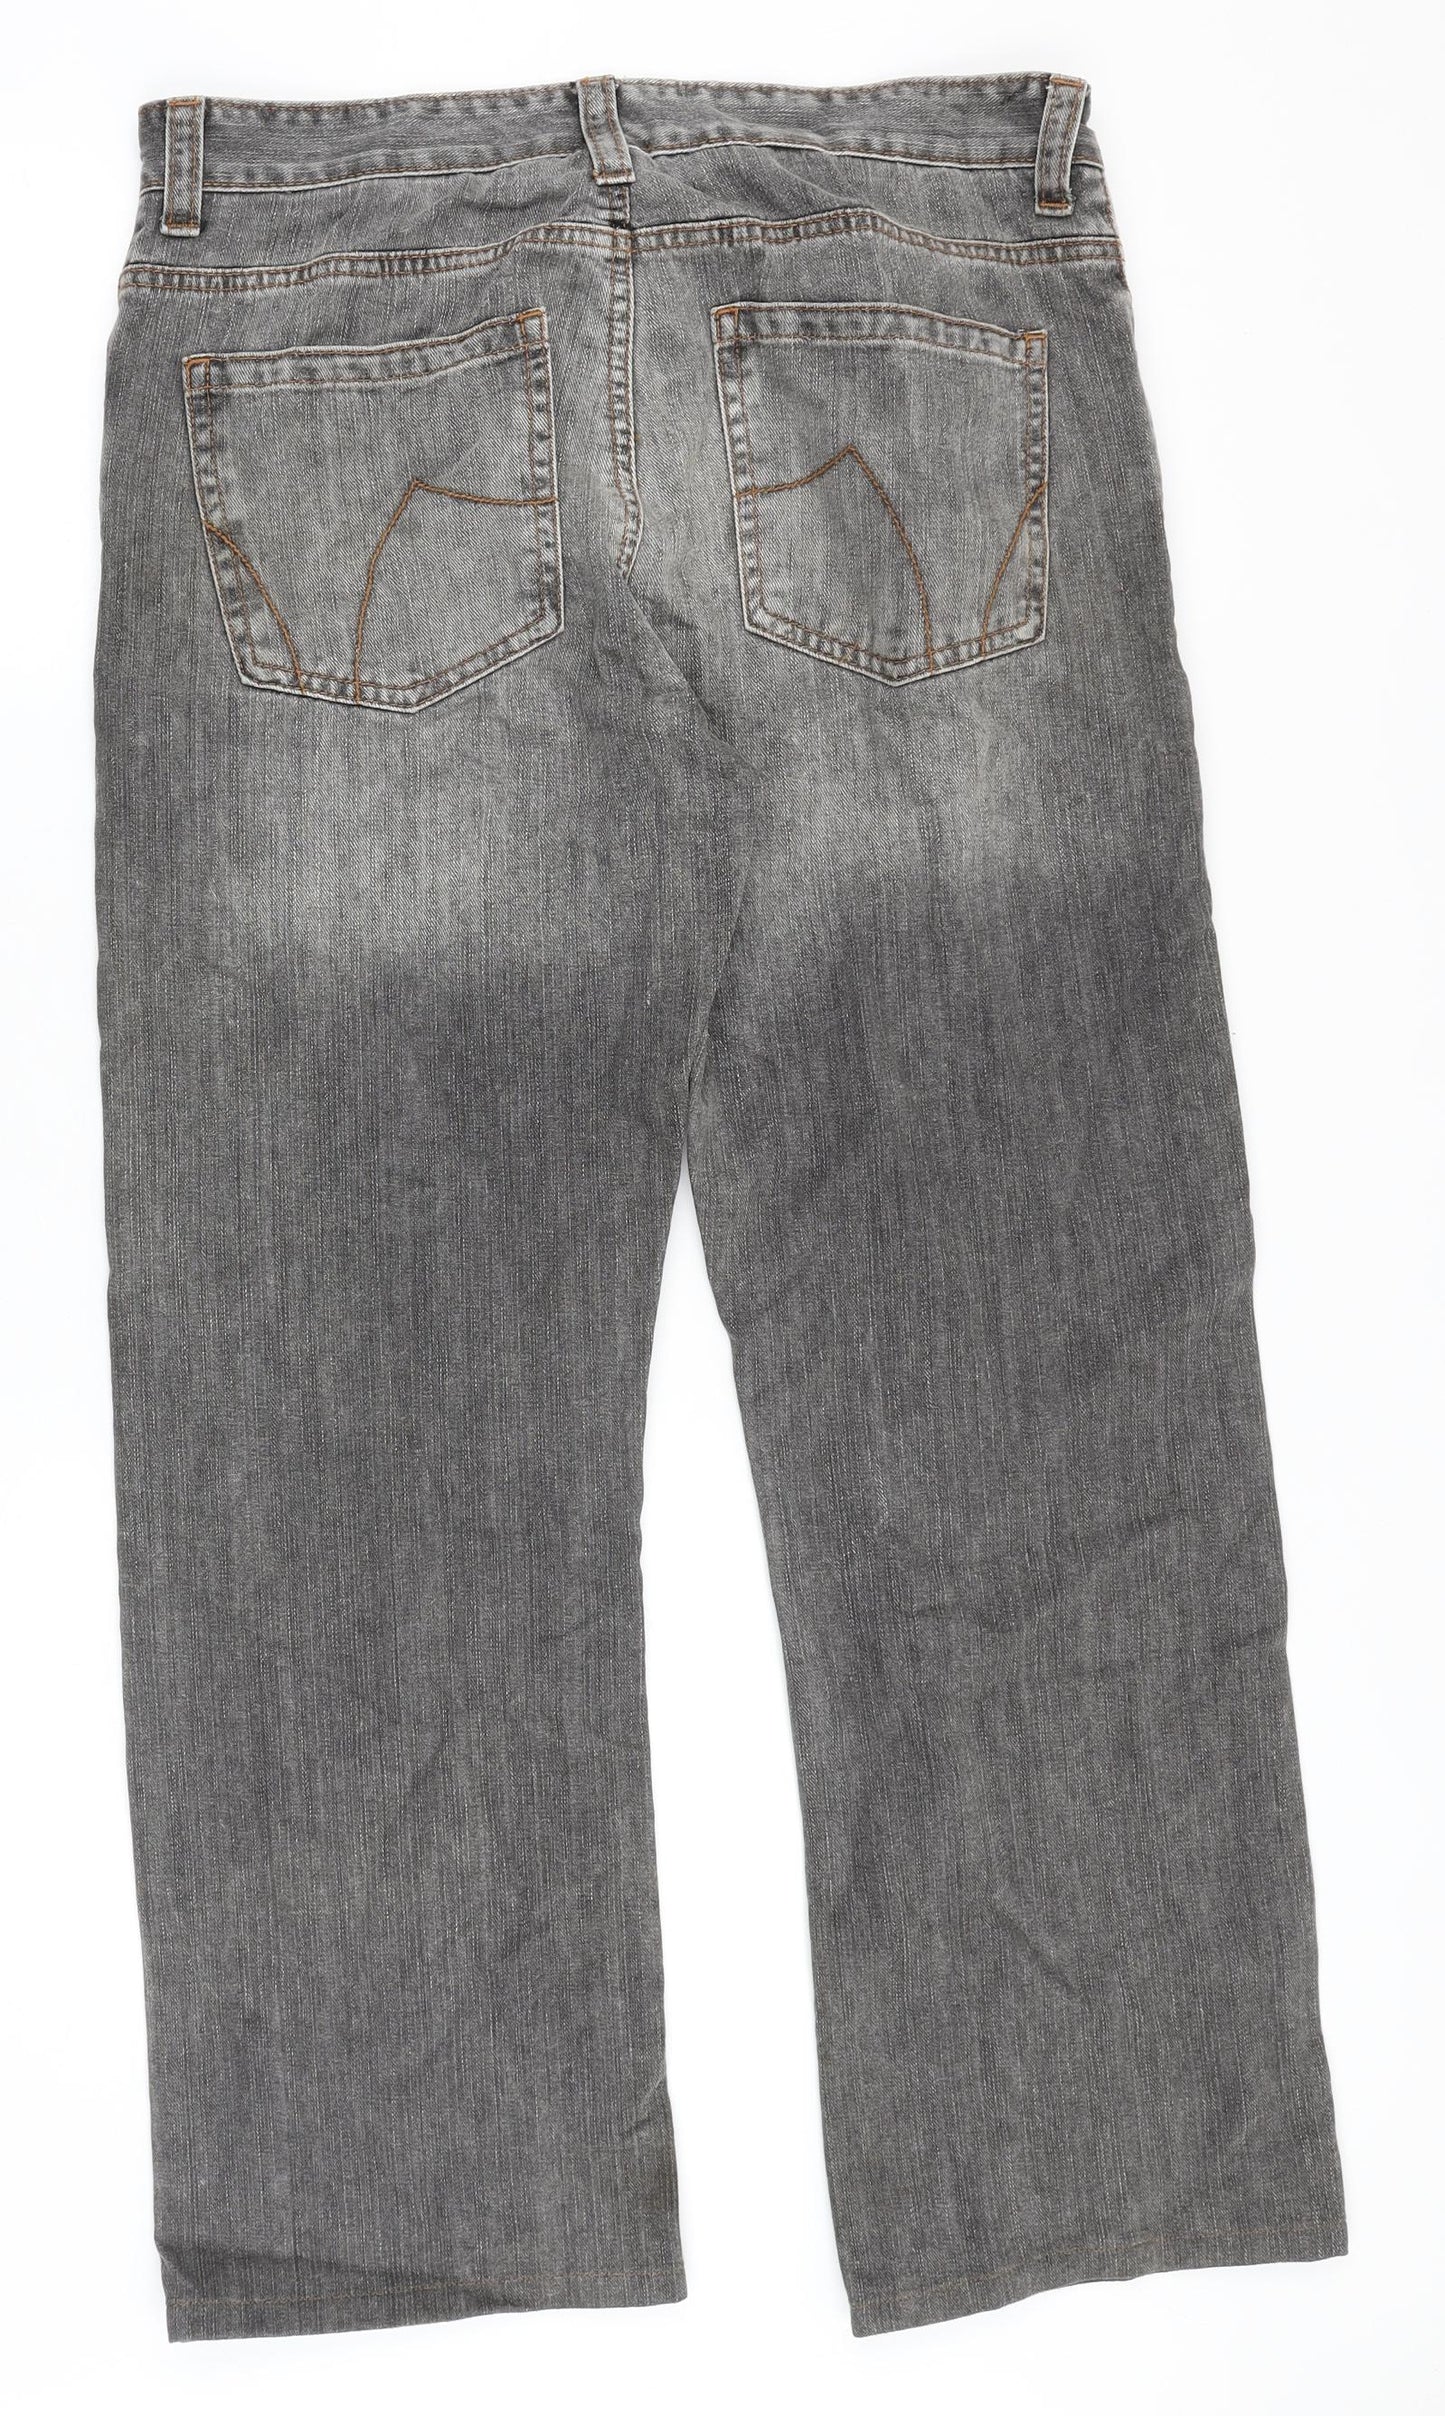 Preworn Mens Grey Cotton Straight Jeans Size 34 in Regular Zip